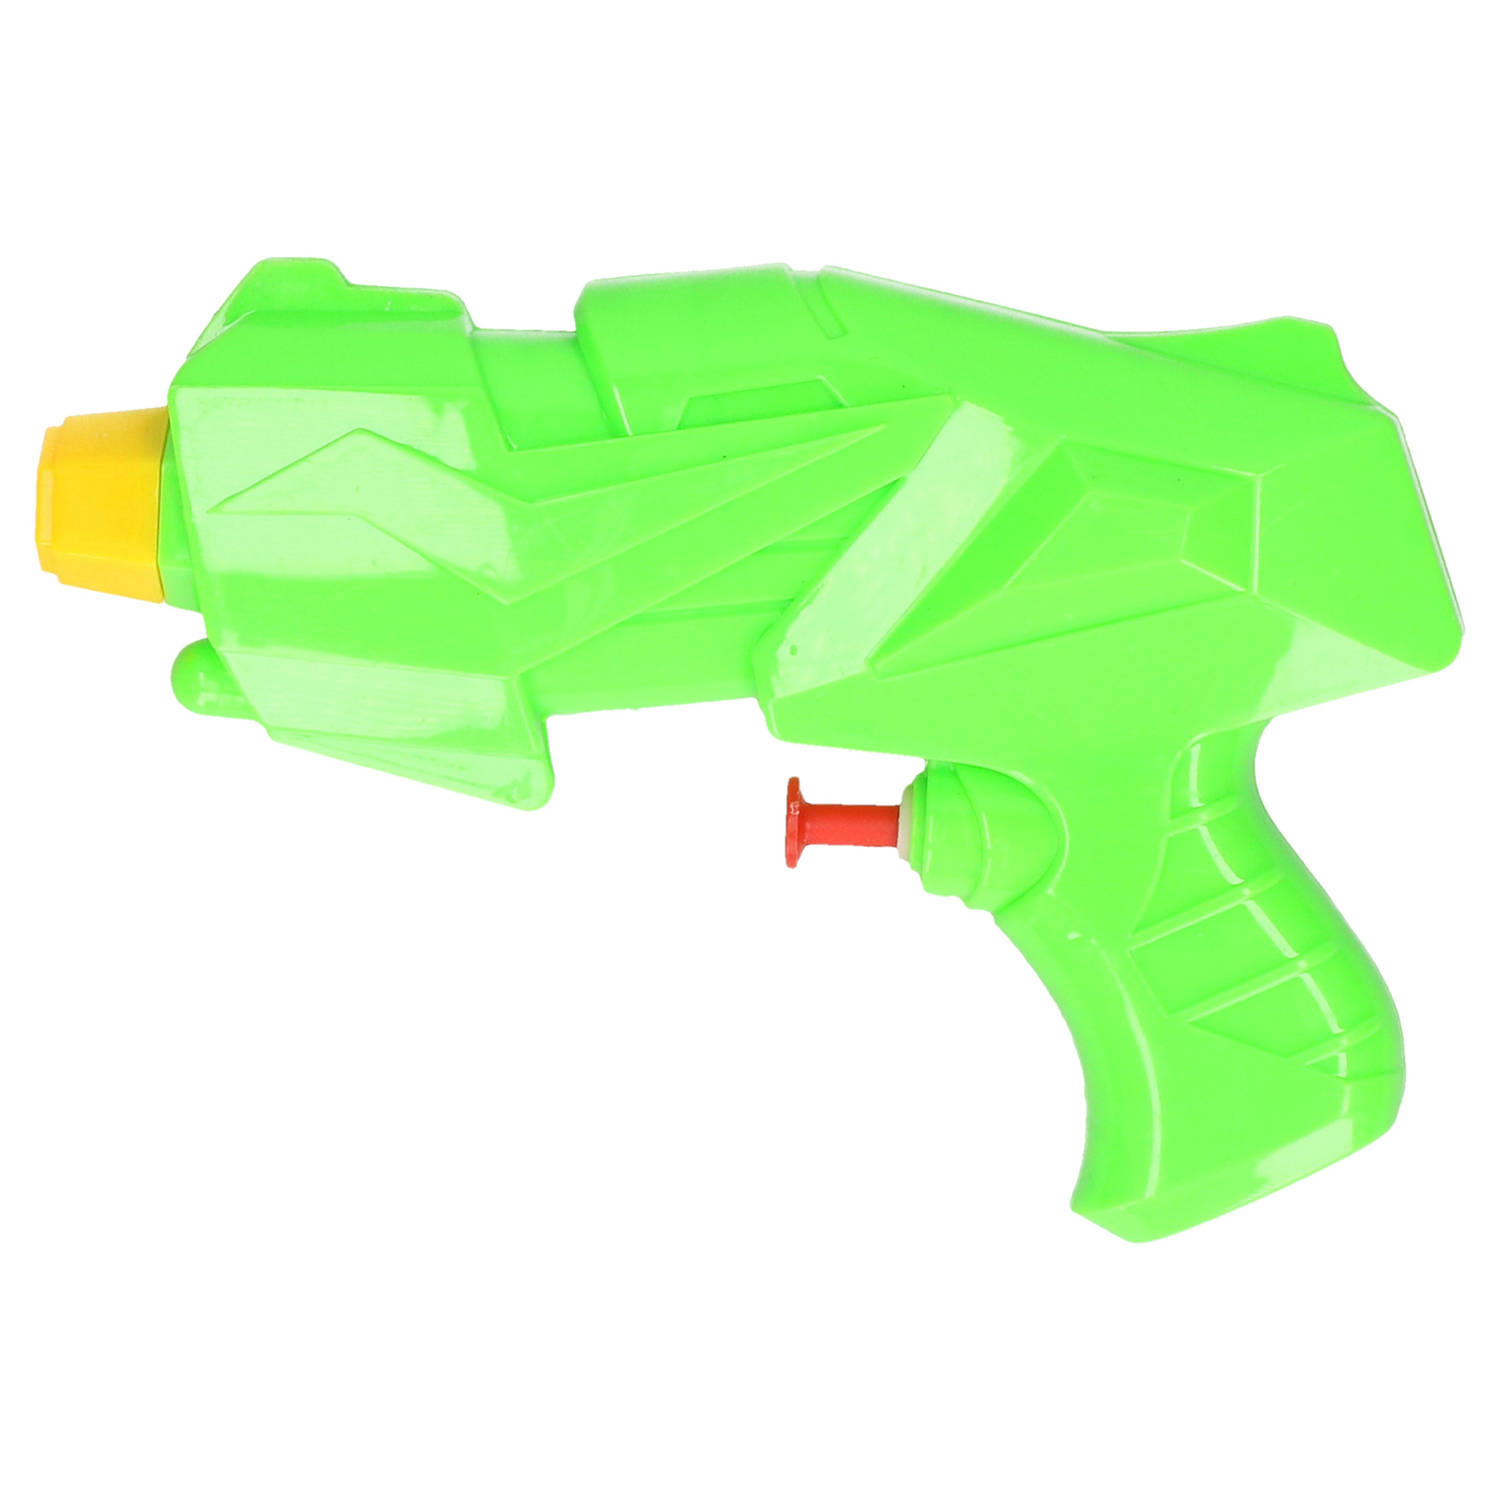 1x Mini Waterpistolen/waterpistool Van 15 Cm Kinderspeelgoed - Waterspeelgoed Van Kunststof - Kleine Waterpistolen - Groen